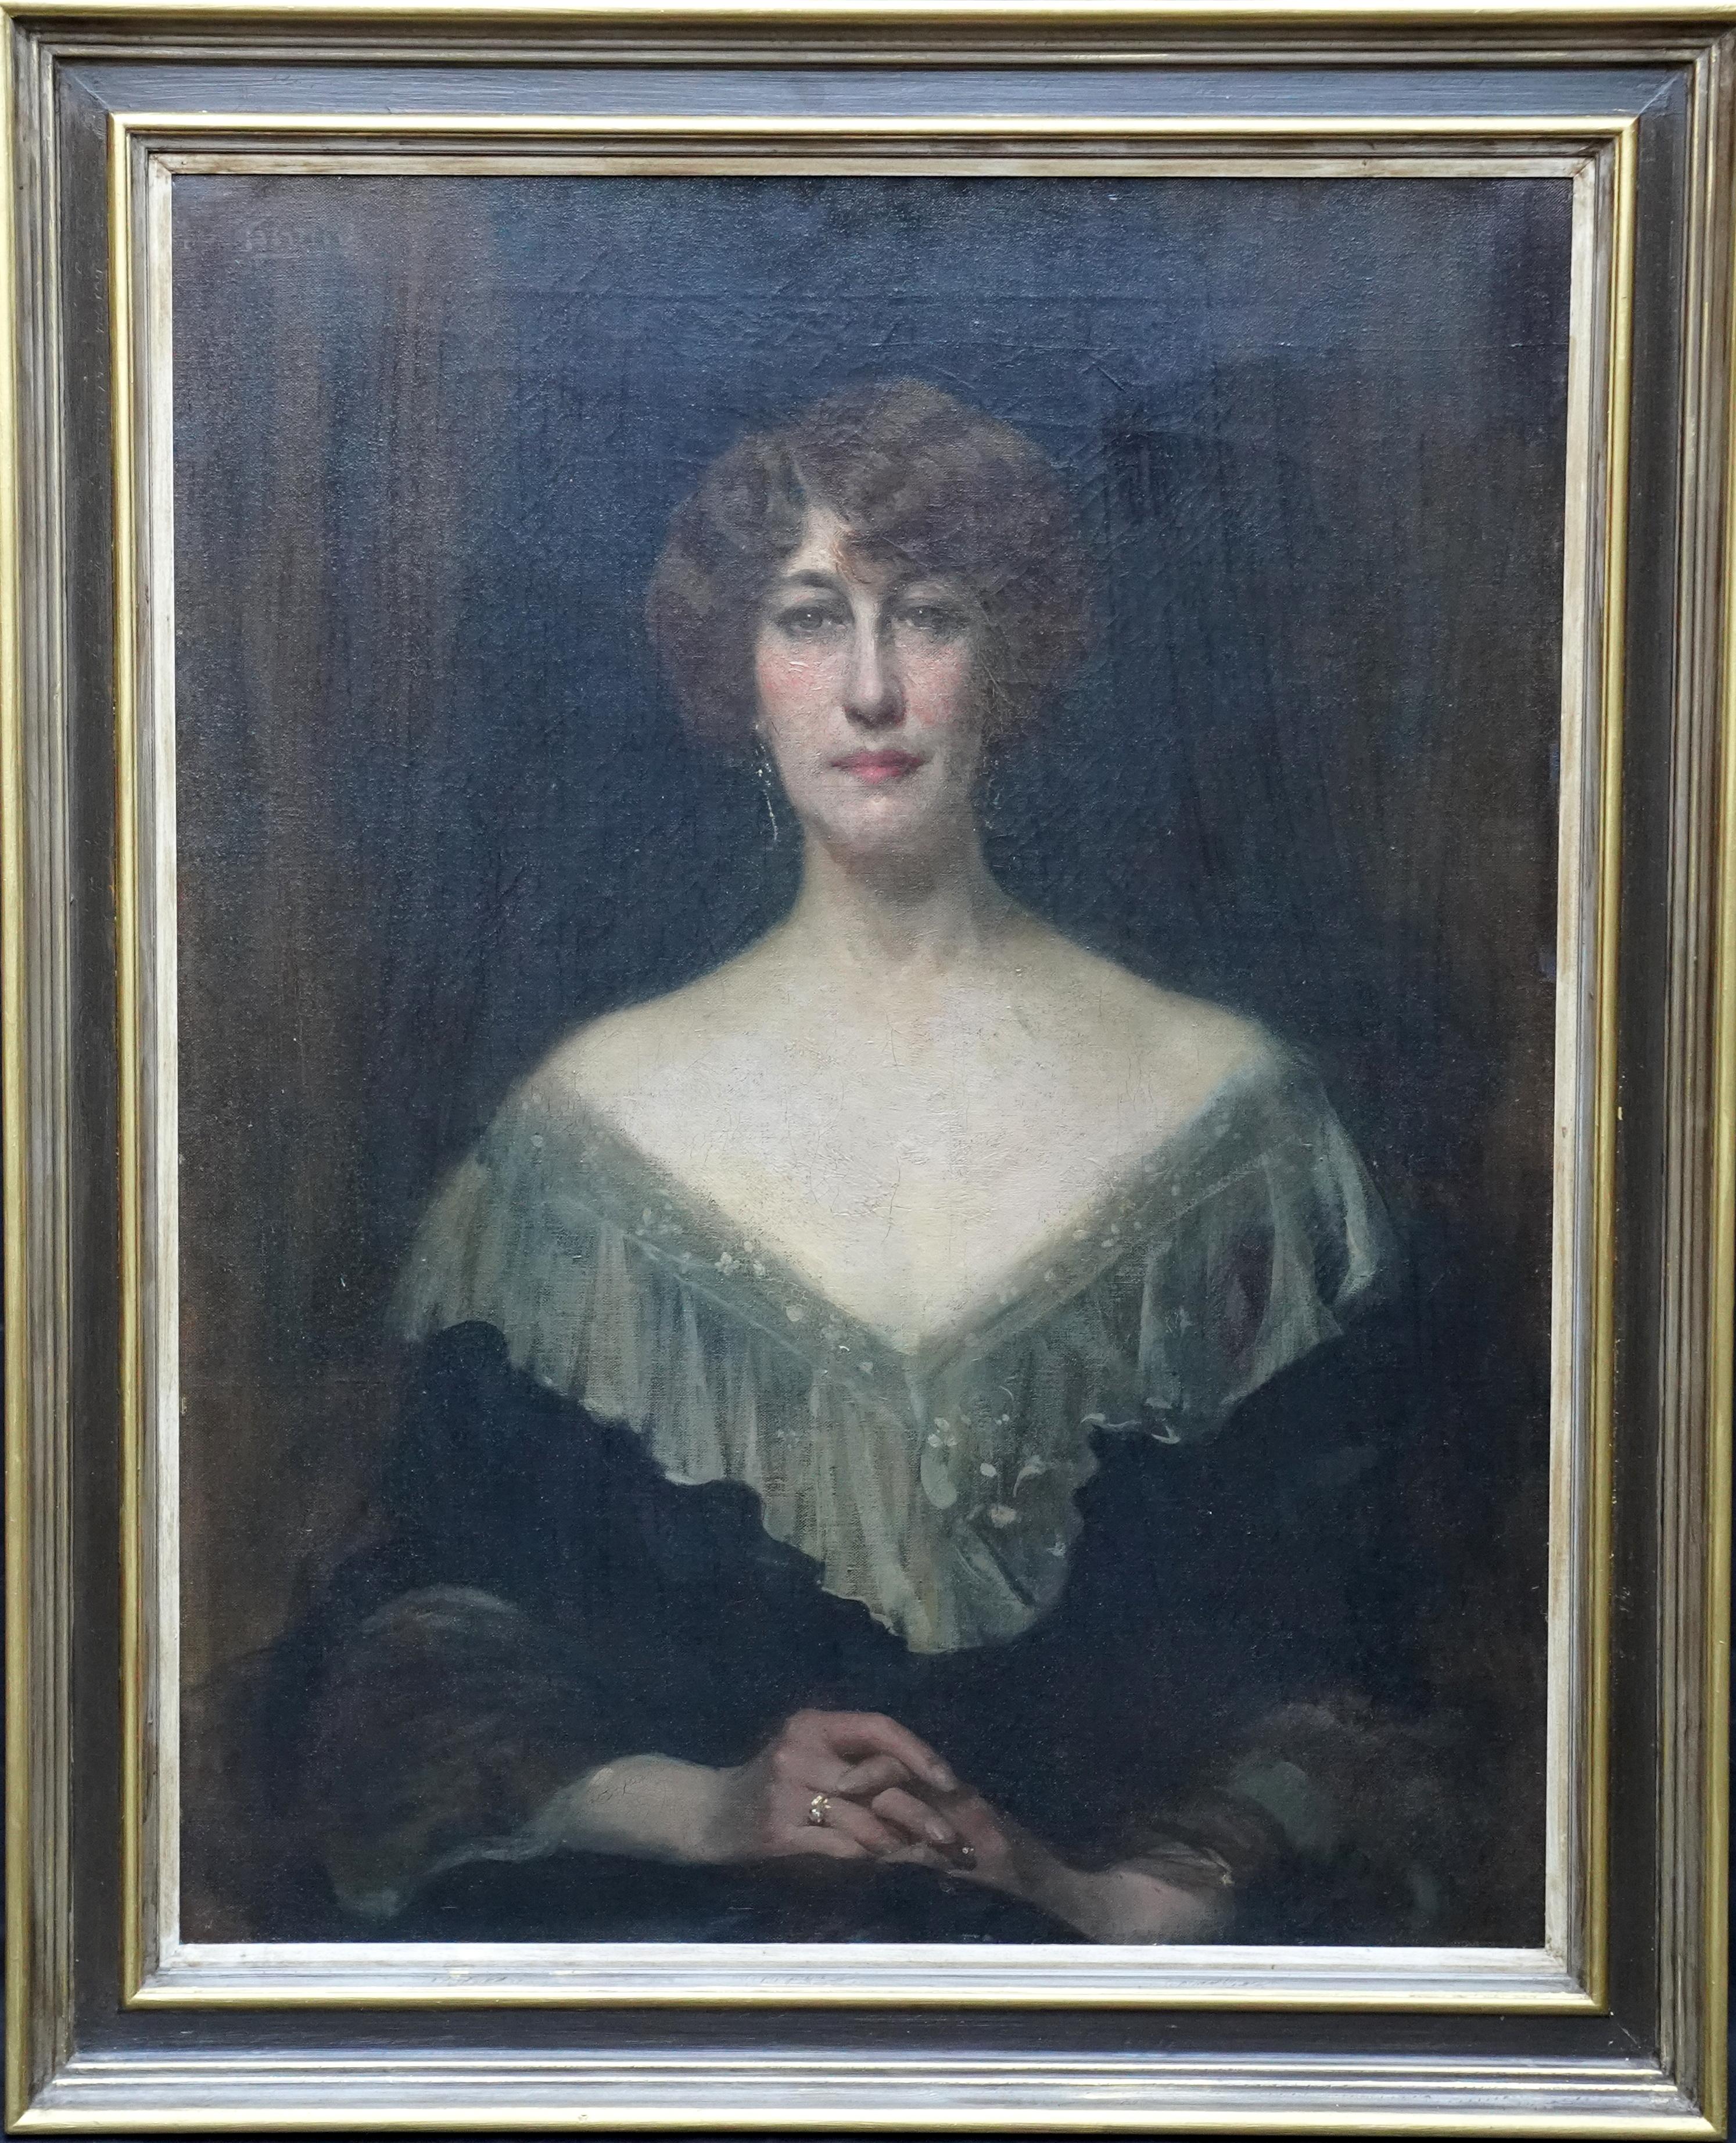 Unknown Portrait Painting - Emily Gertrude Lilias Muirhead - British Edwardian art portrait oil painting 